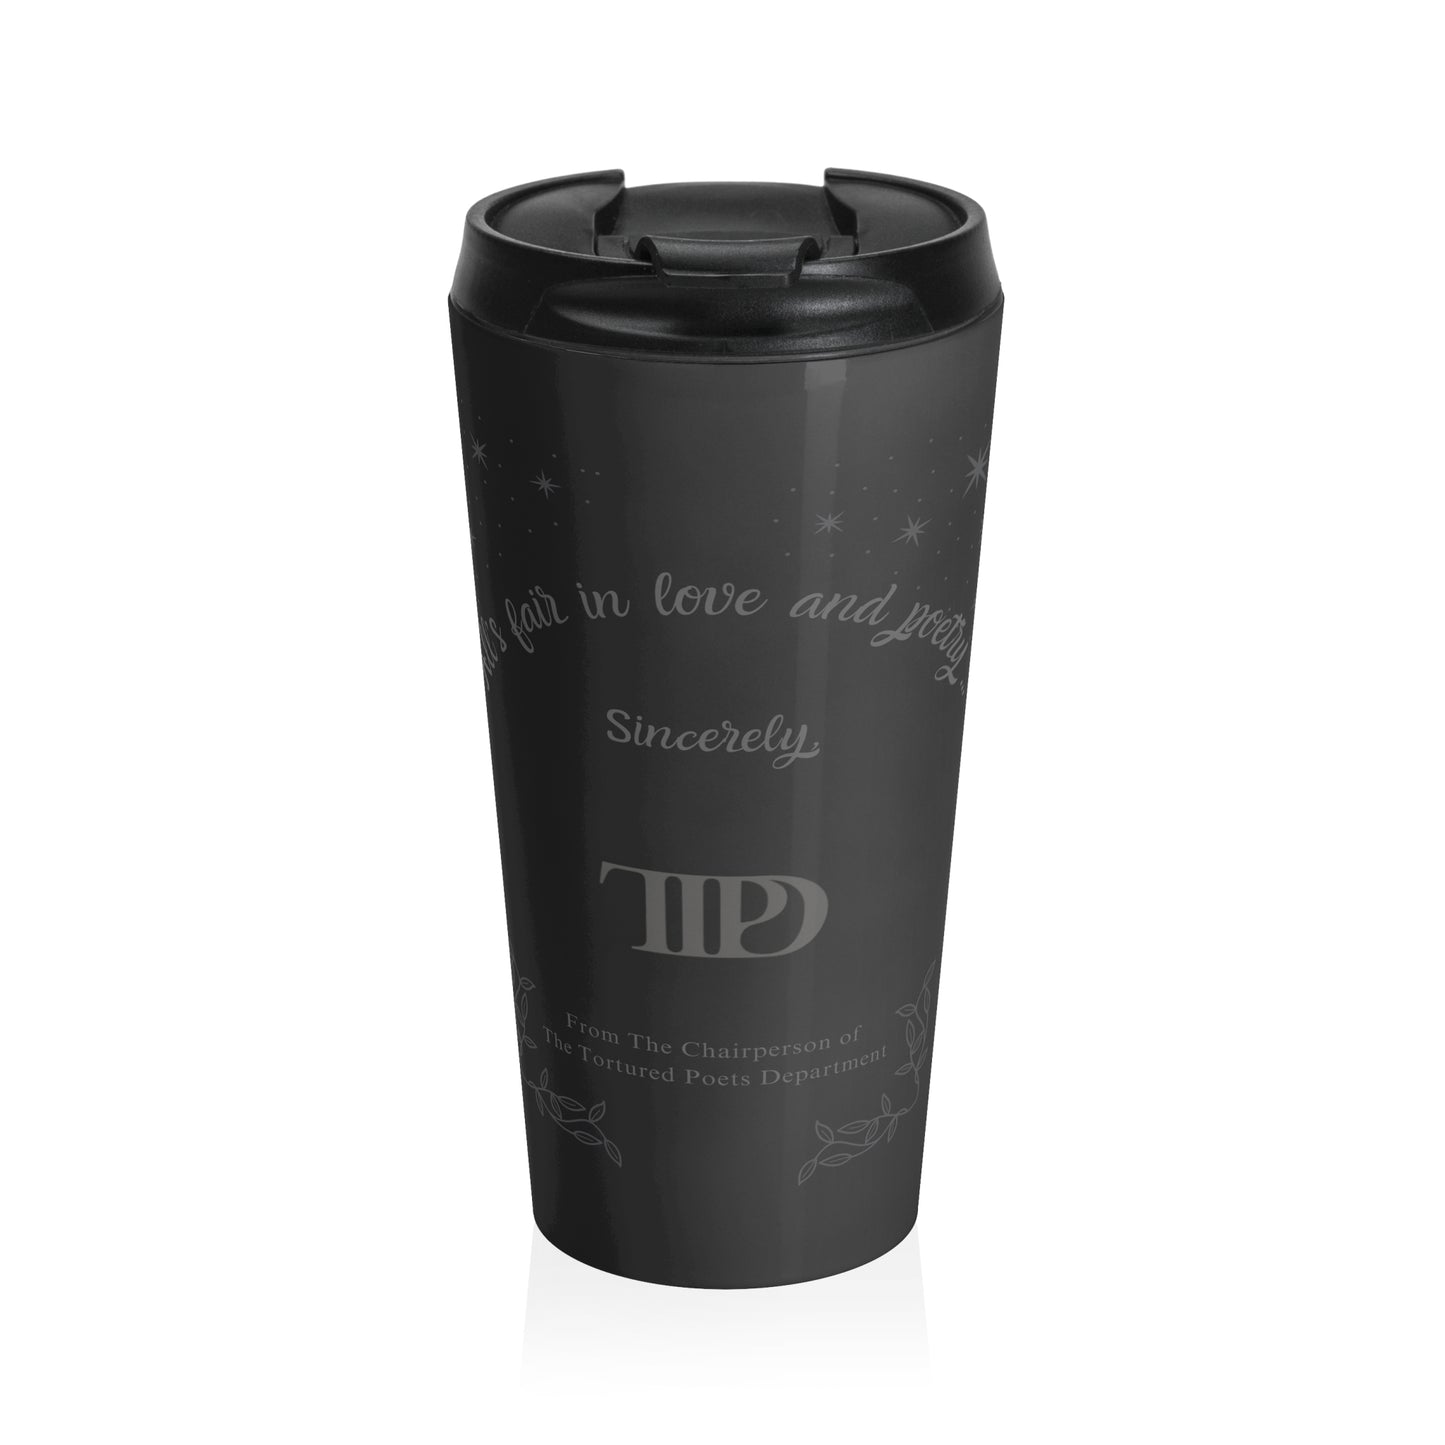 TTPD - Inspired Travel Mug | Stainless Steel